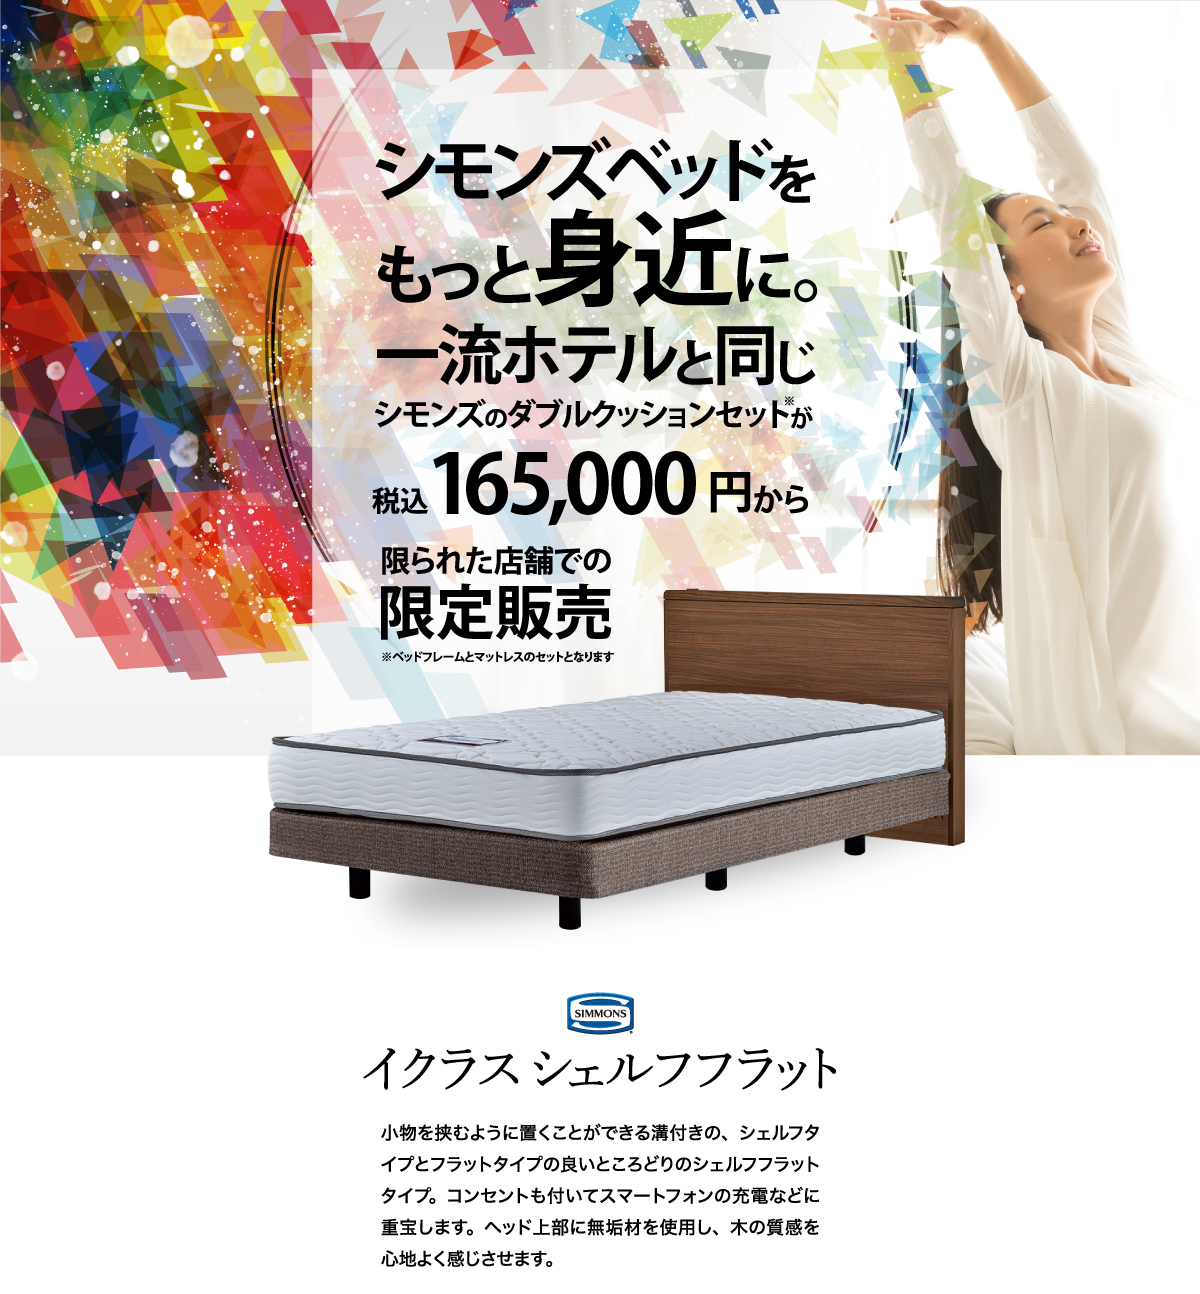 シモンズ ベッド イクラス フラット シングル ソフト6.5 マットレス ダブルクッション 限定モデル ベッド 日本製 正規販売店 レギュラー SIMMONS